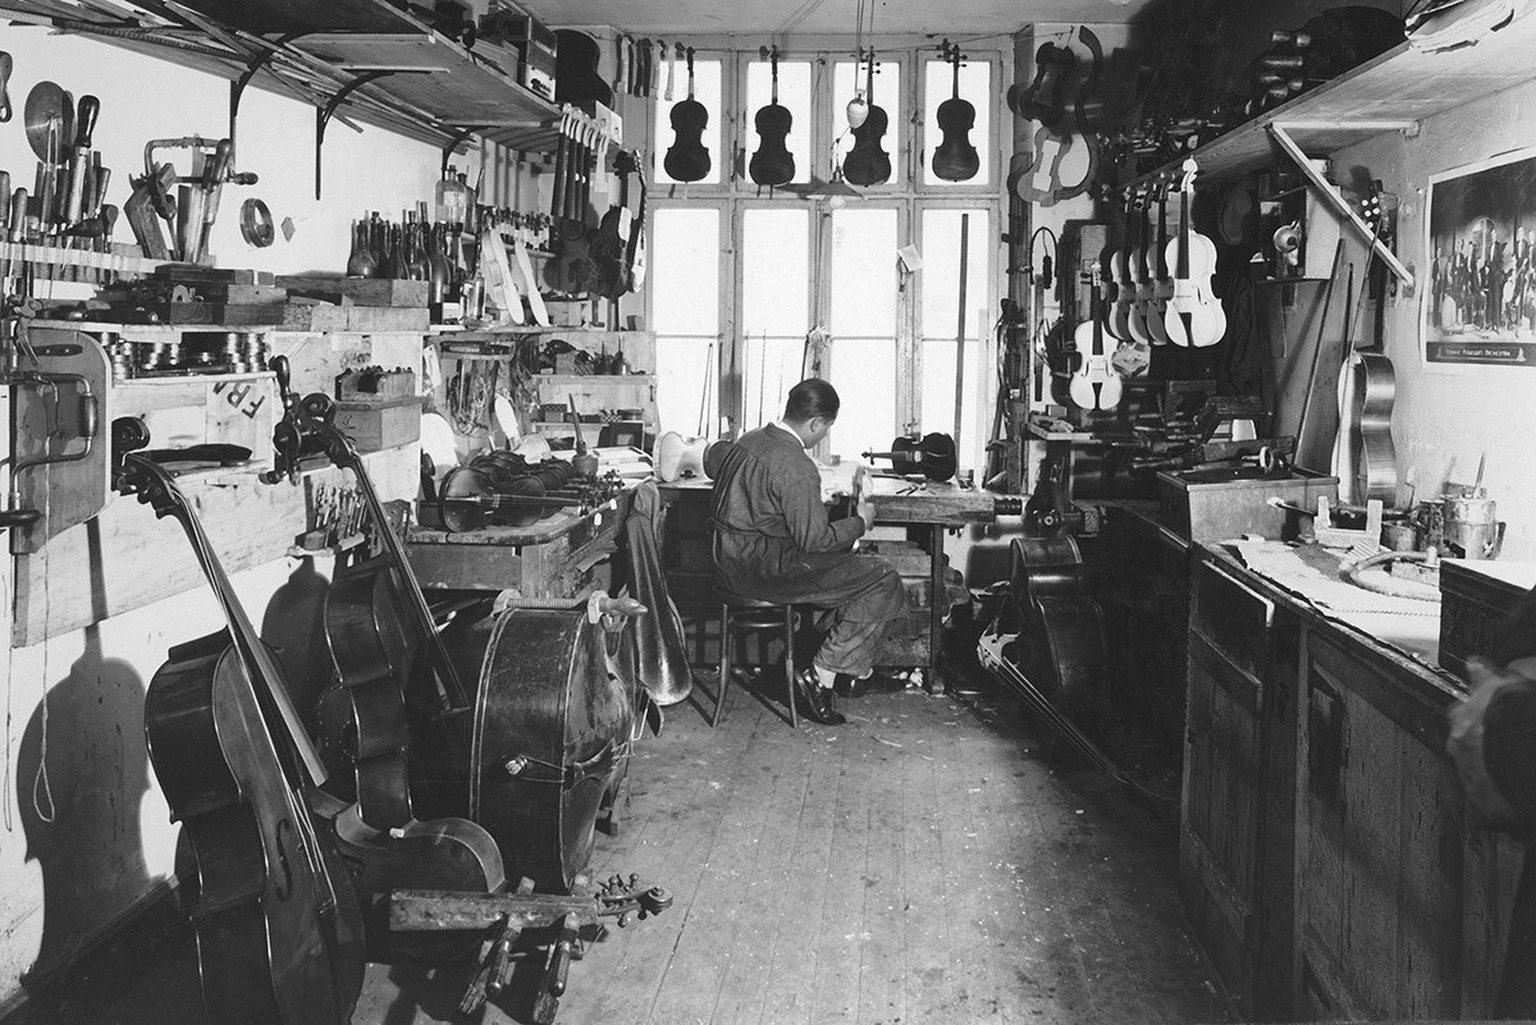 Karl Schneider als junger Geigenbauer im Atelier von Paul Meinel in Basel, um 1928.
https://www.riogitarren.ch/